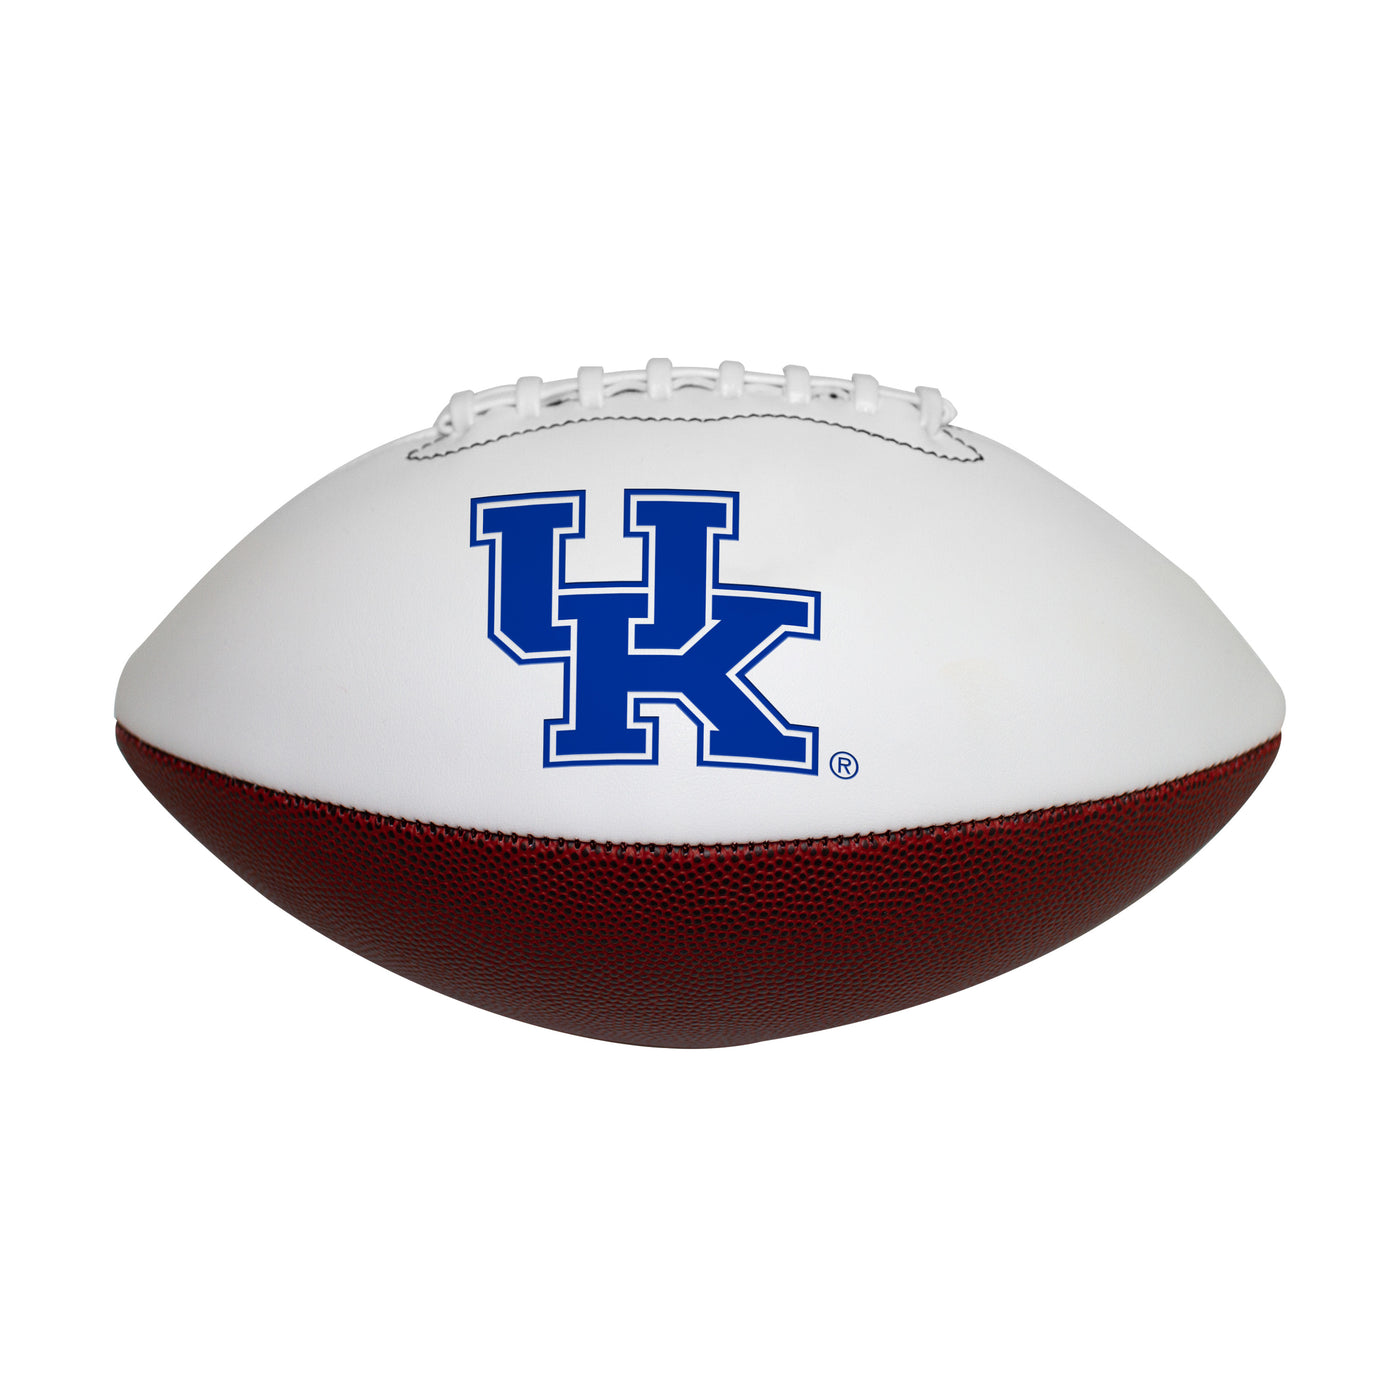 Kentucky Official-Size Autograph Football